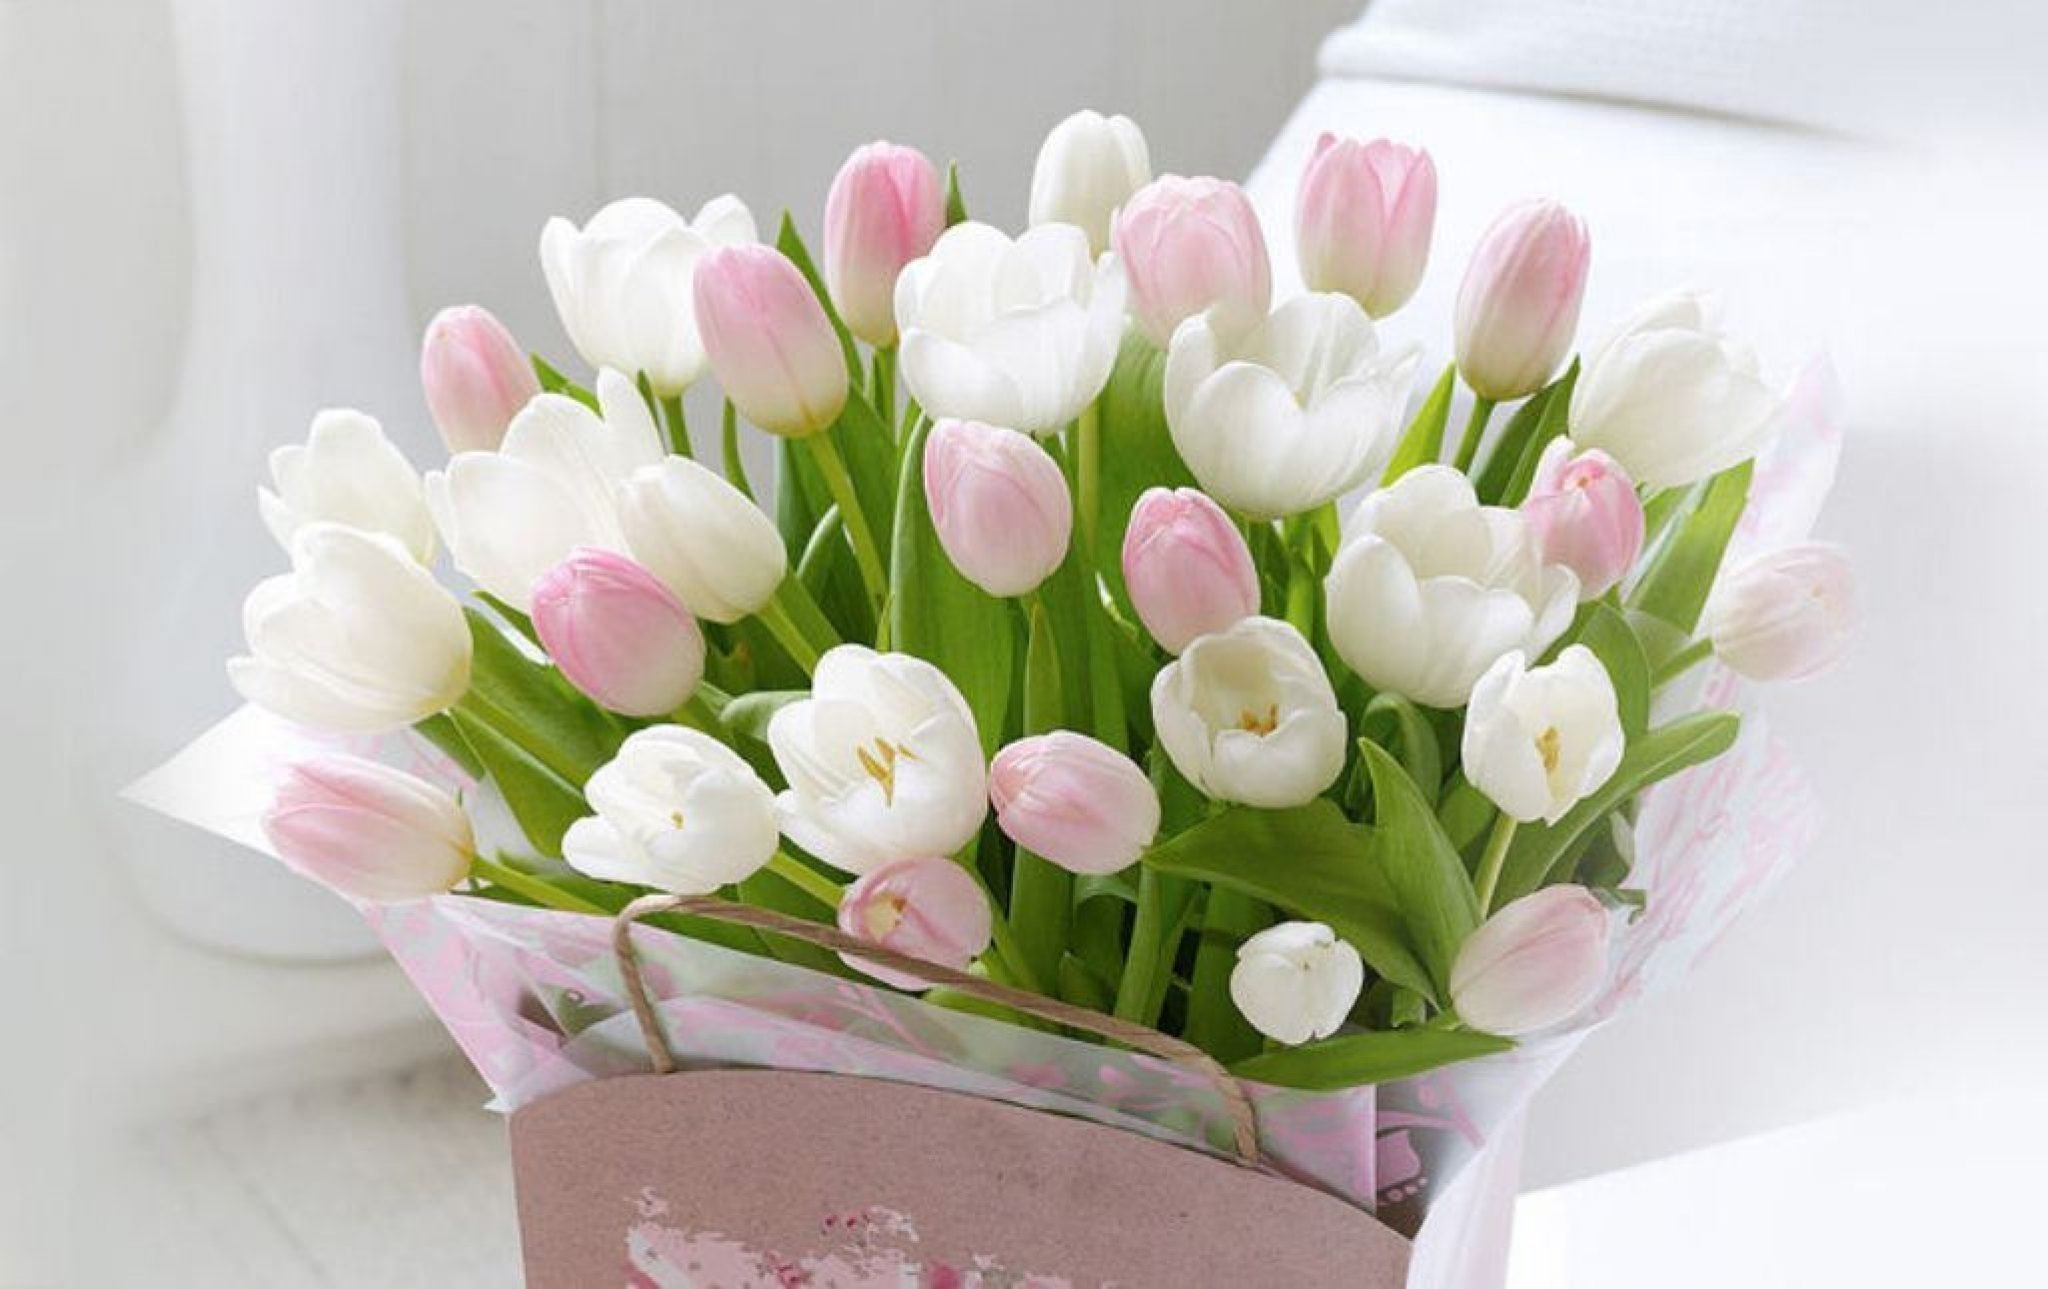 Красивое весеннее поздравление с днем рождения. С днём рождения тюльпаны. Нежные тюльпаны. С днем рождения весенние цветы. Нежный букет тюльпанов.